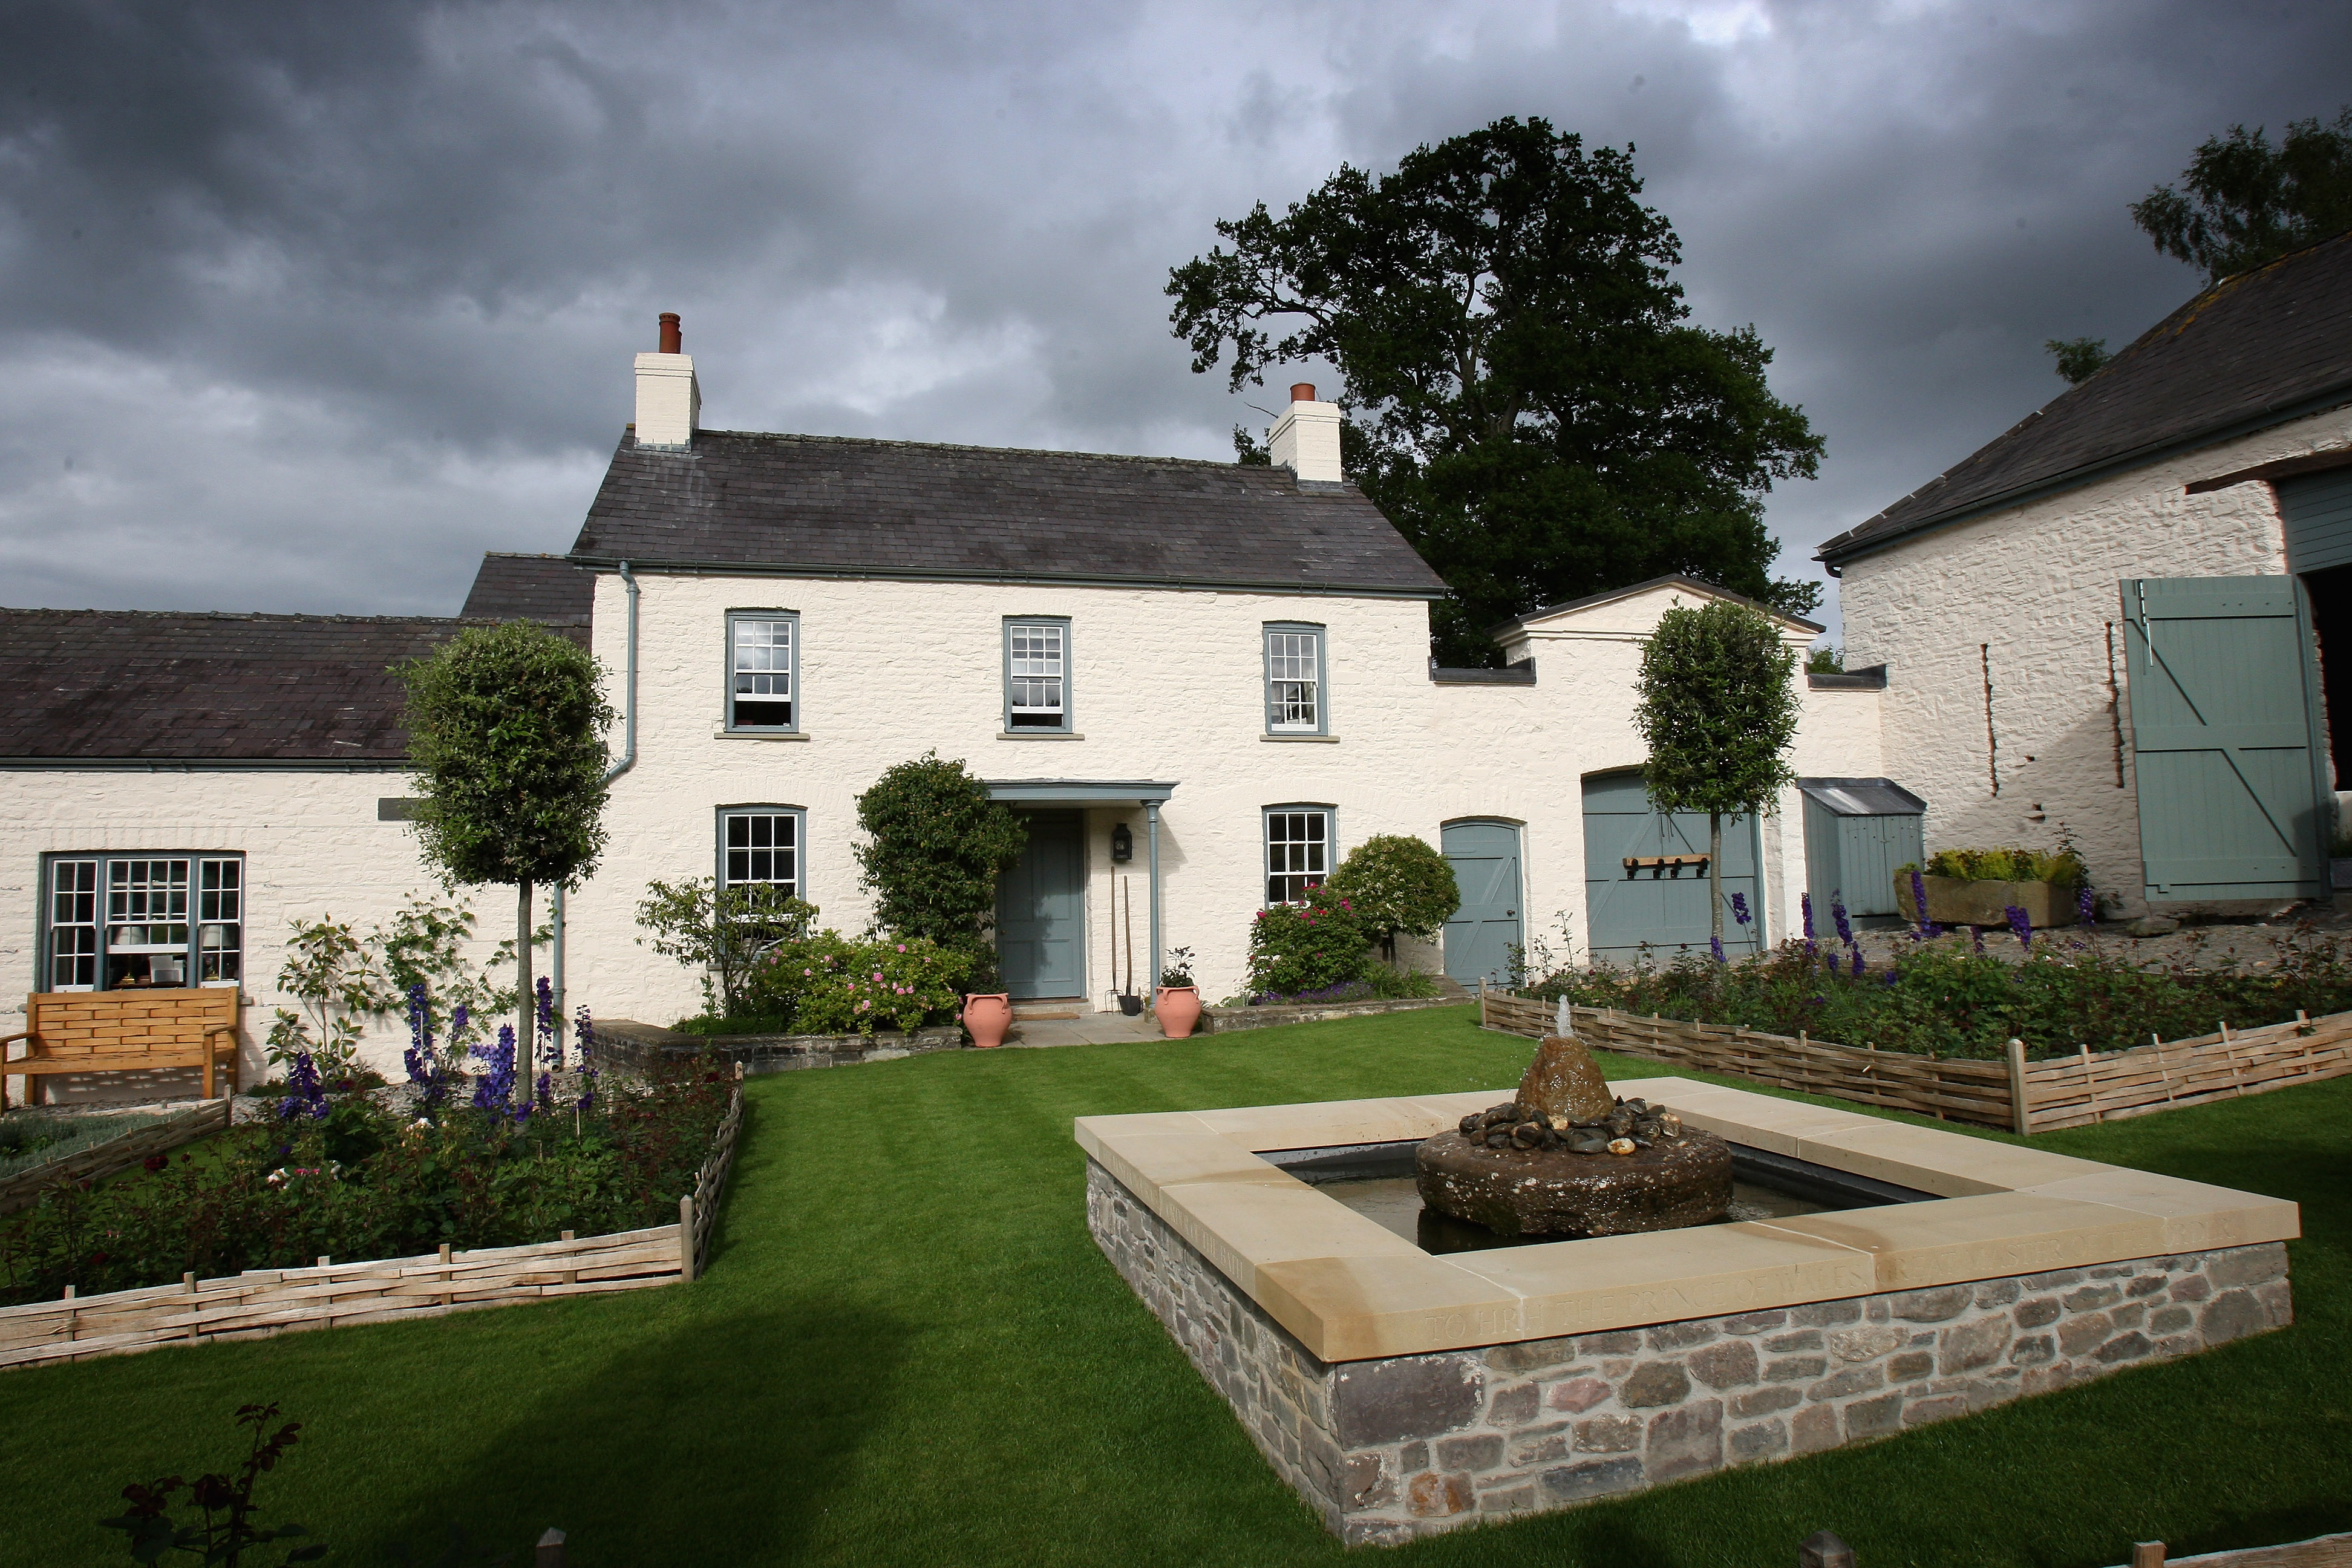 Charles kaufte das Cottage 2007 für 1,2 Millionen Pfund und ließ es restaurieren